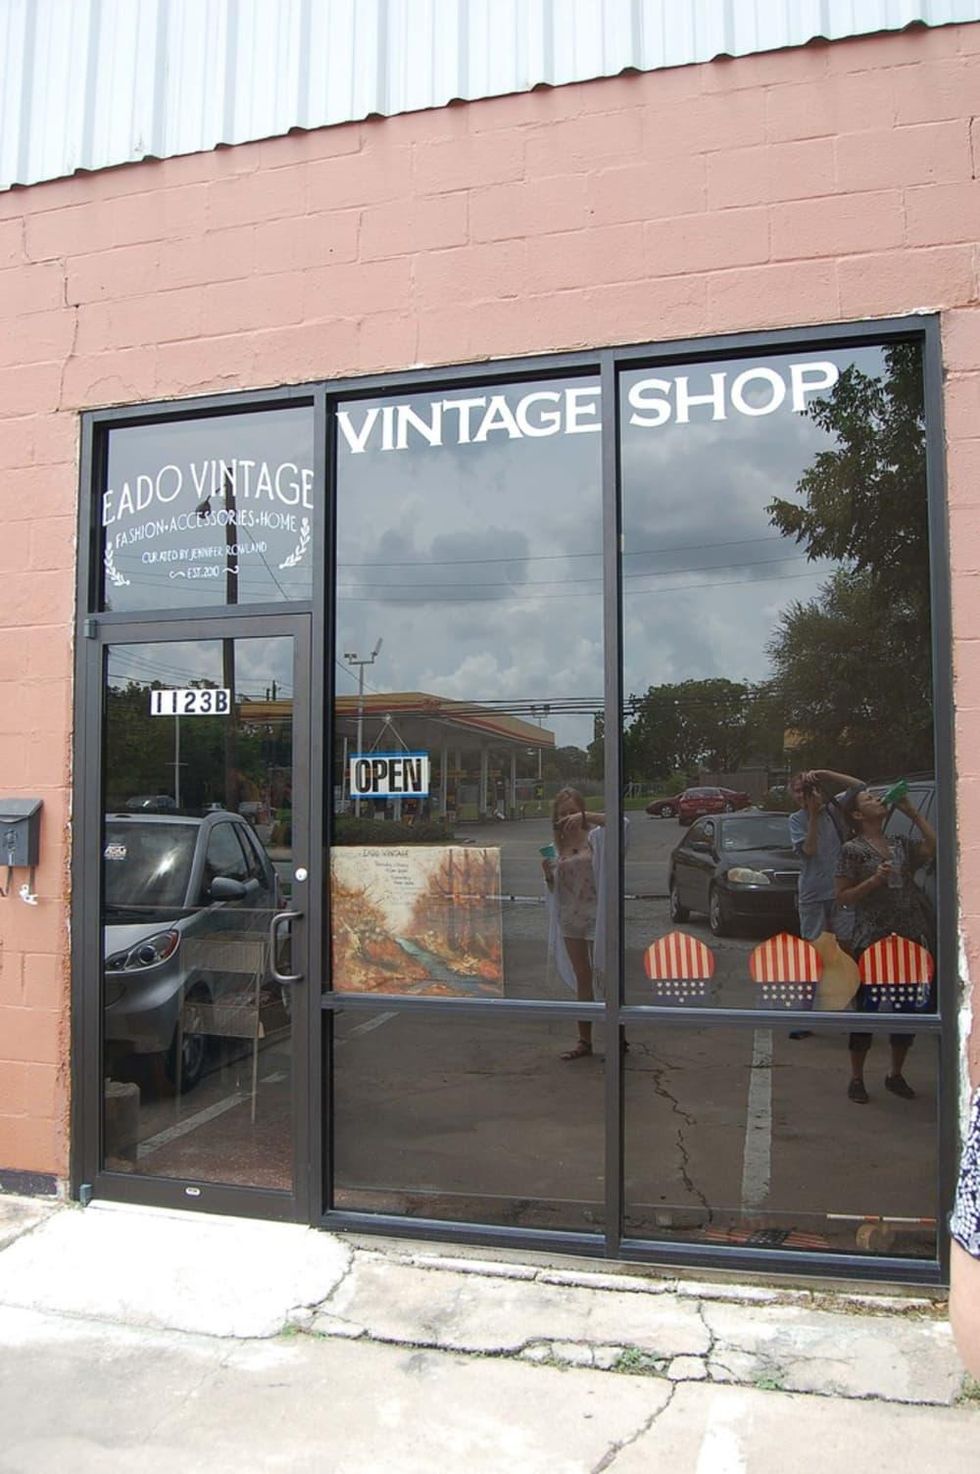 Eado Vintage shop